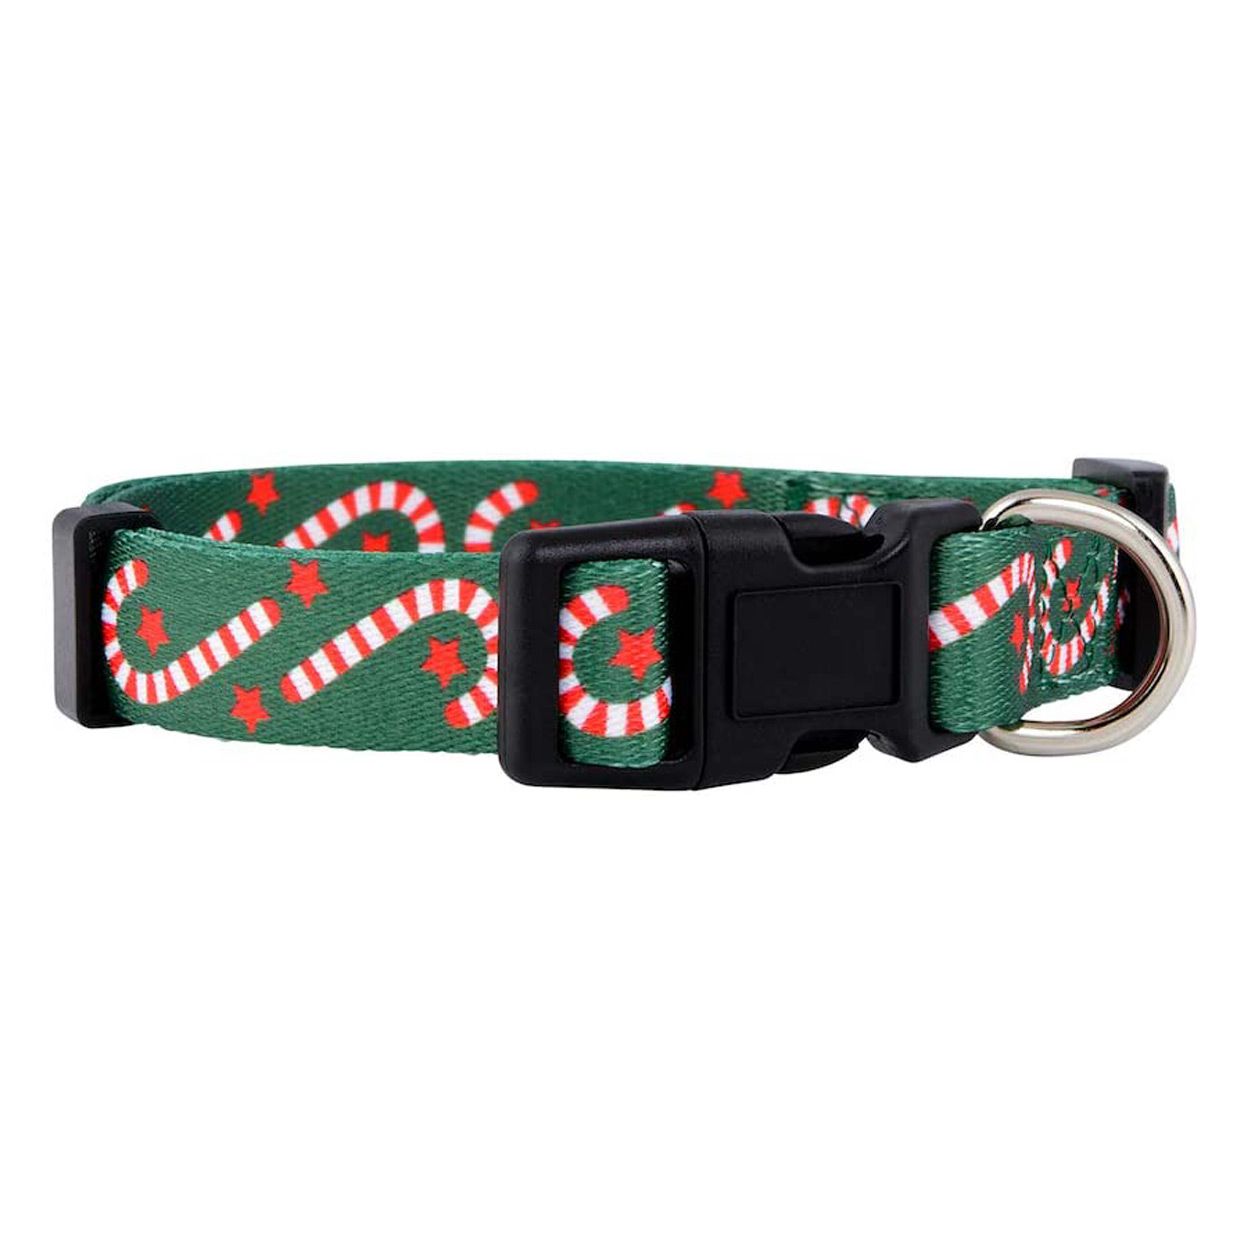 native-pup-christmas-dog-collar